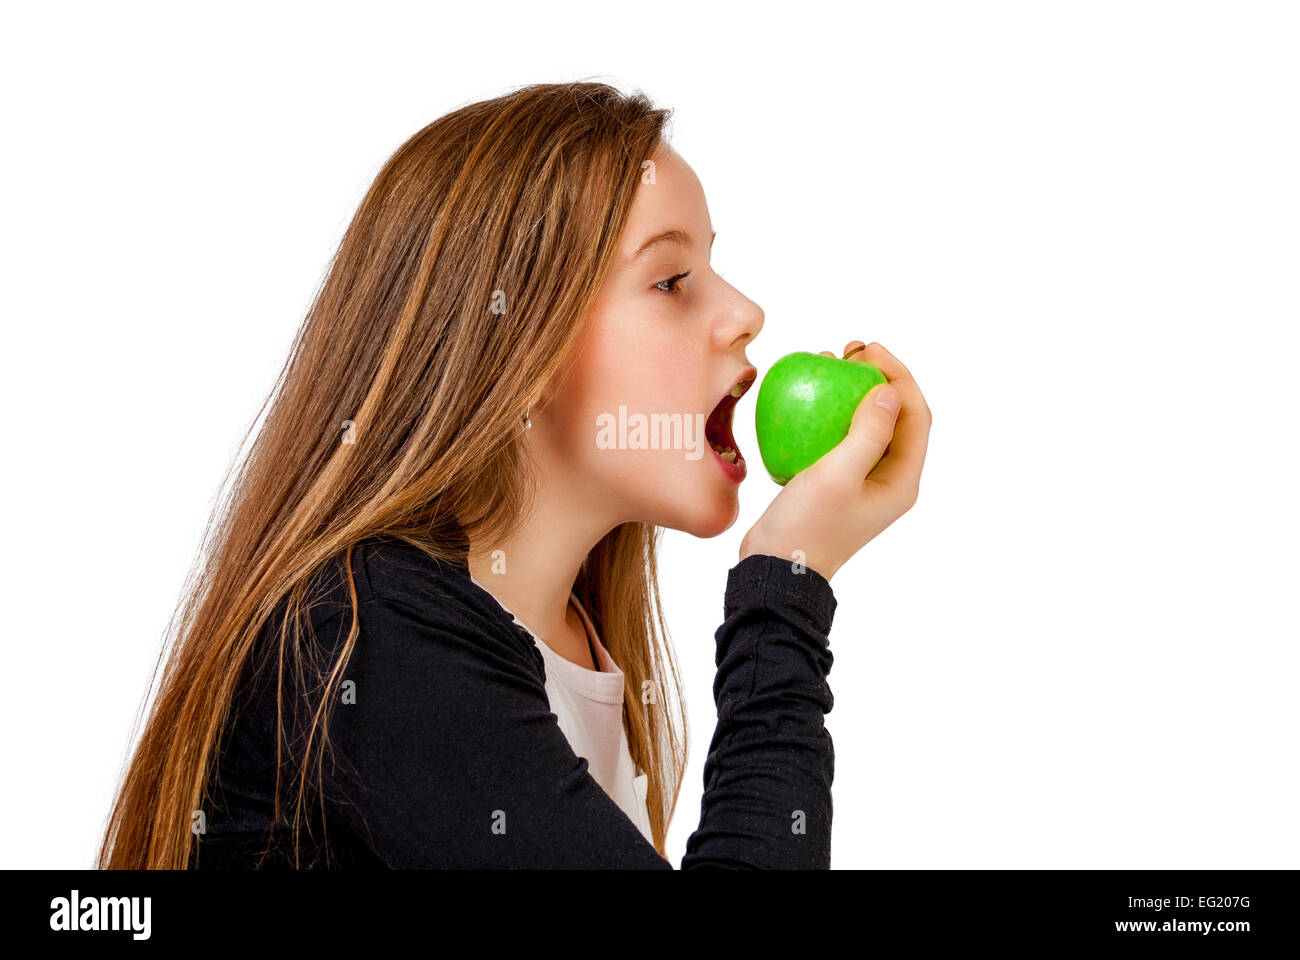 Little girl bite eat green apple isolated on white Stock Photo